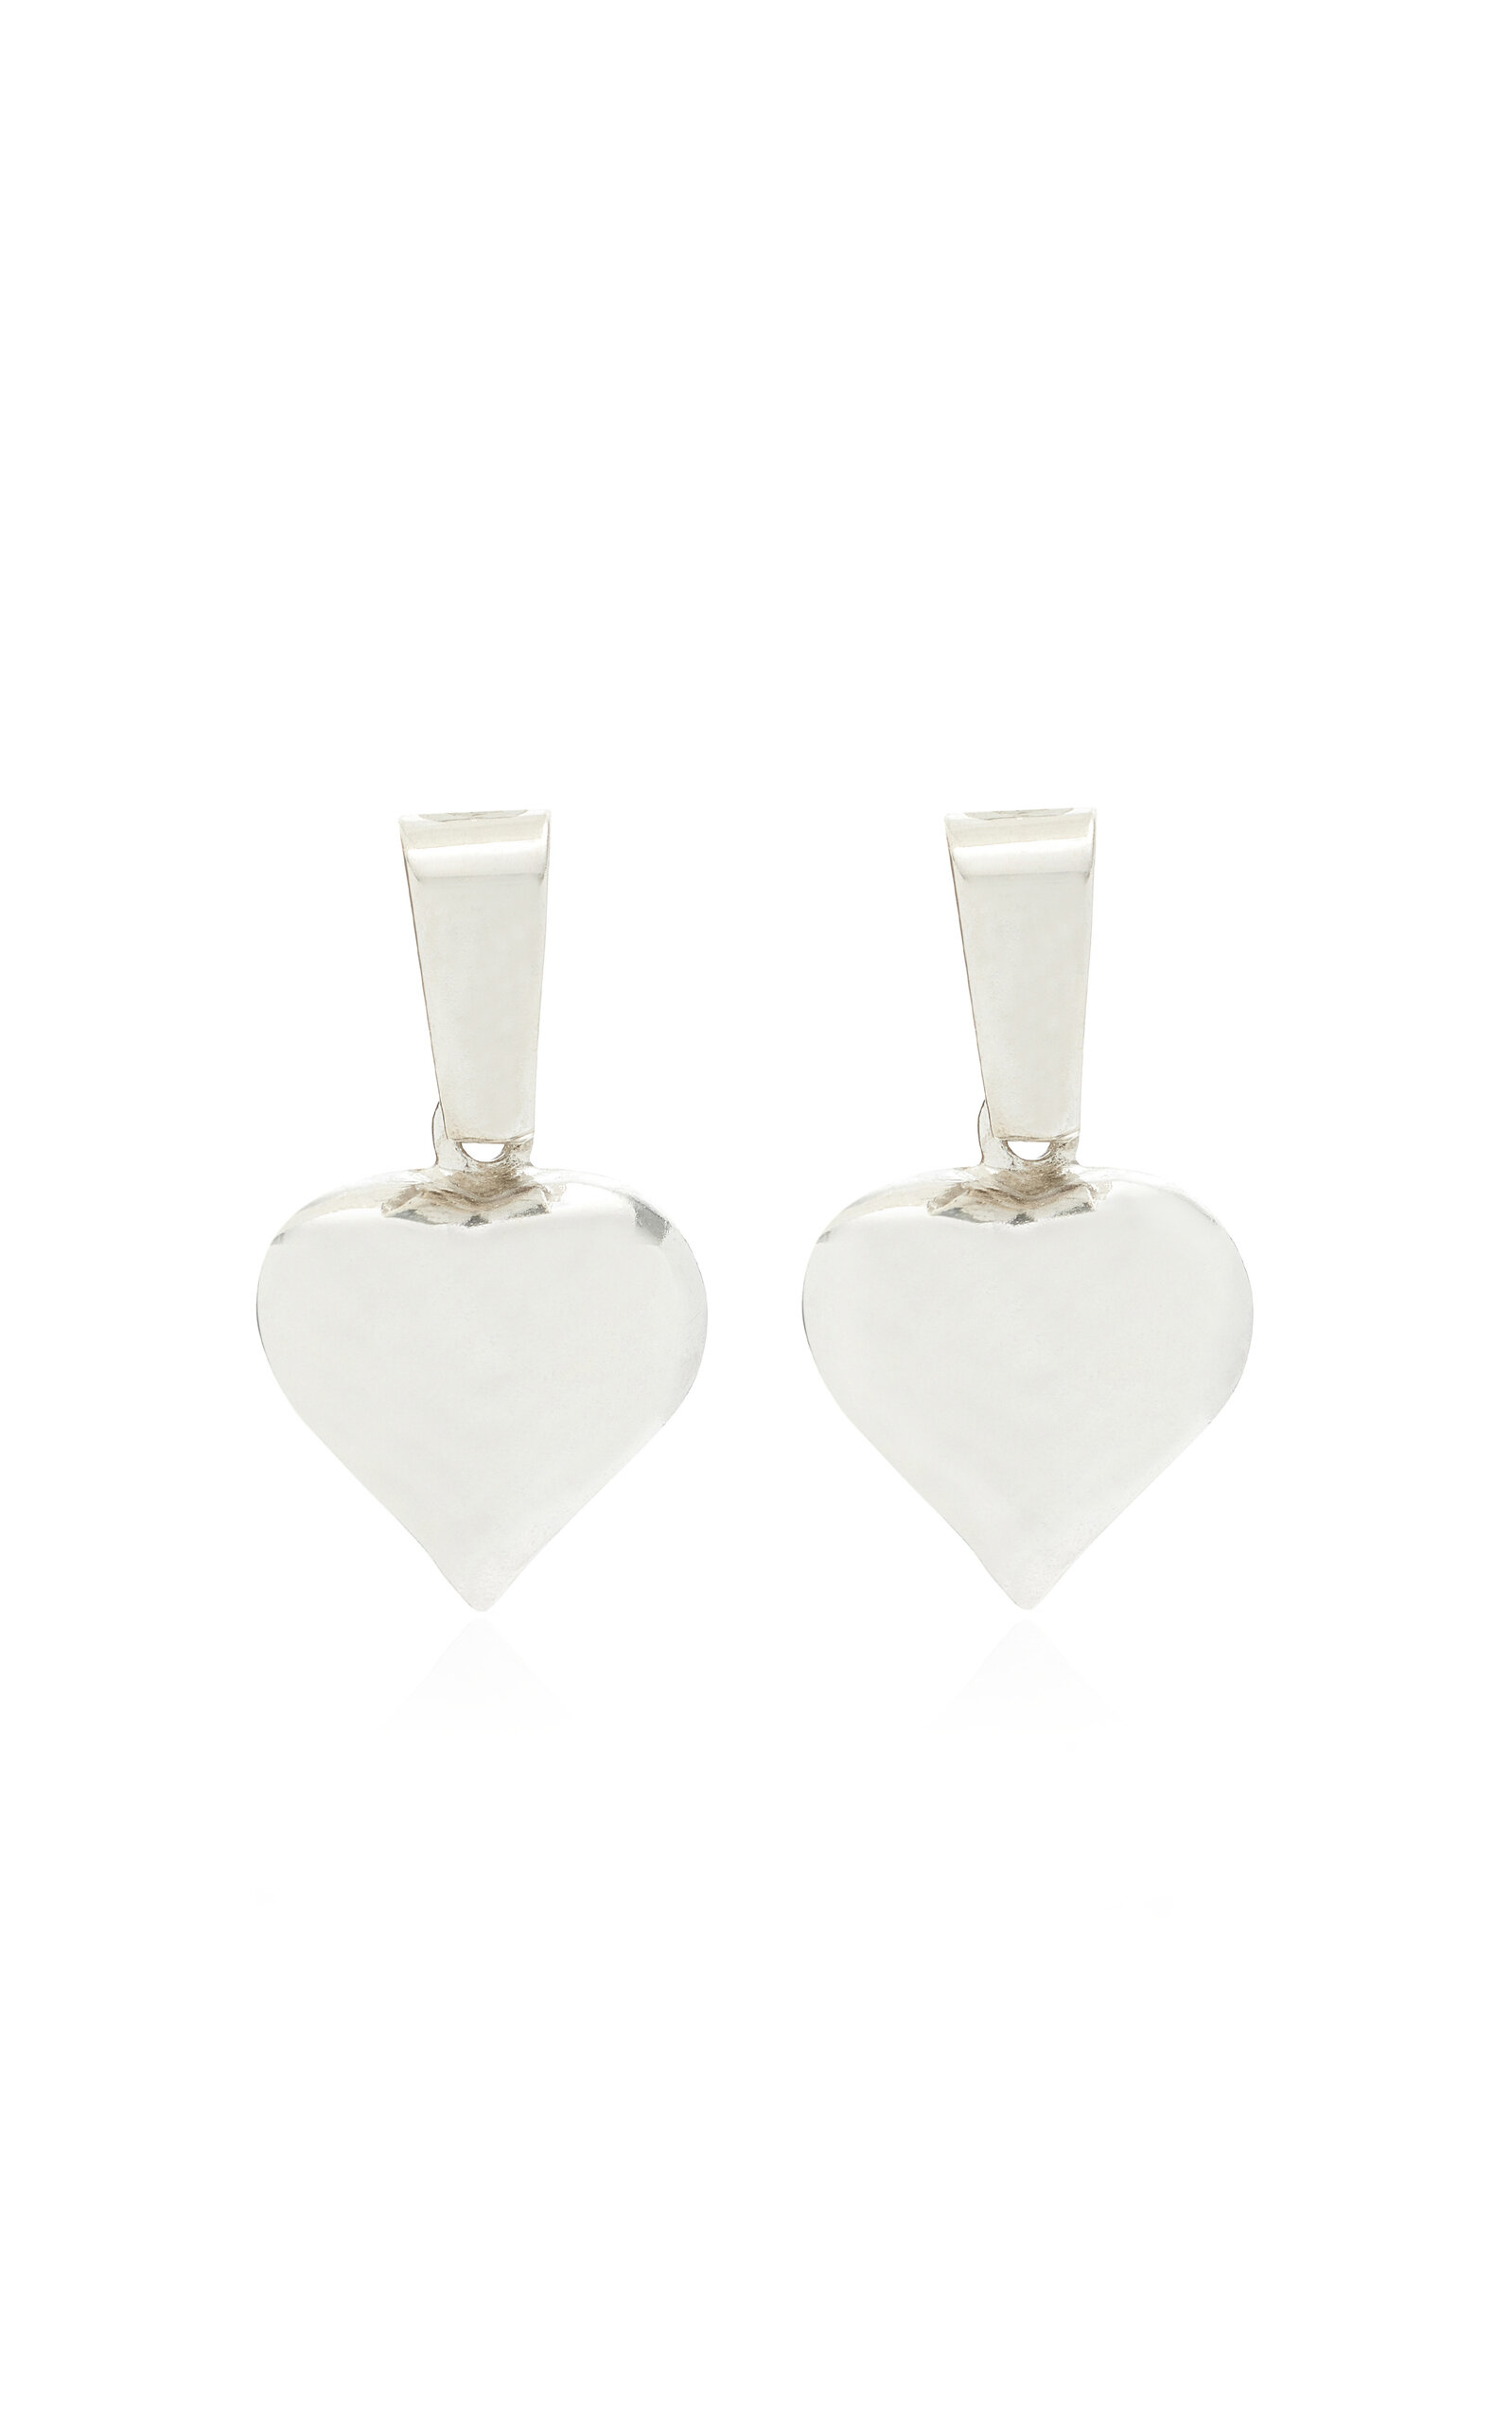 Martine Ali Women's Exclusive Heart Bale Sterling Silver Earrings